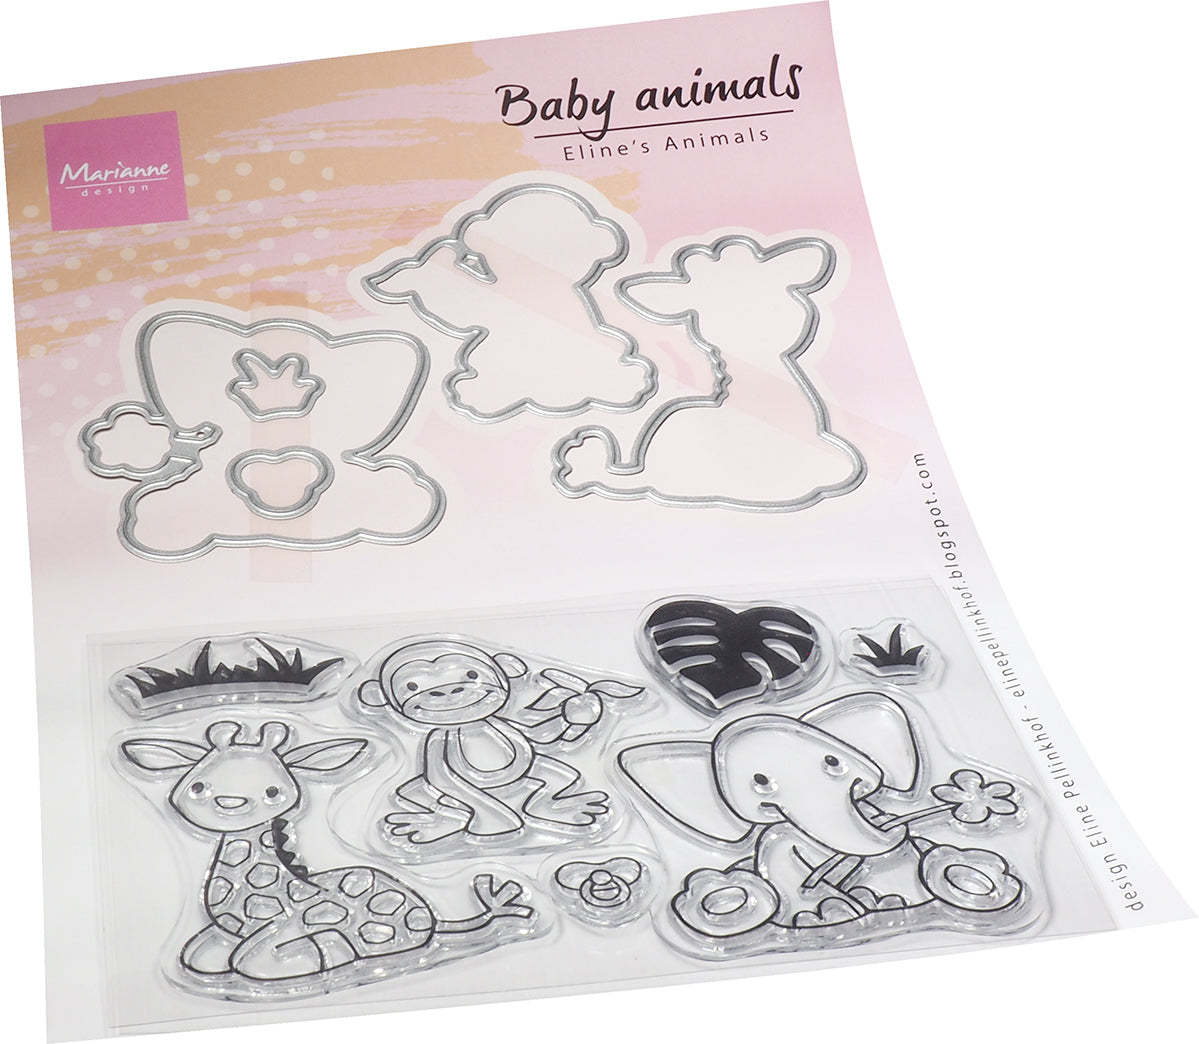 Marianne Design Stamp & Die Set - Eline's Animals - Baby Animals